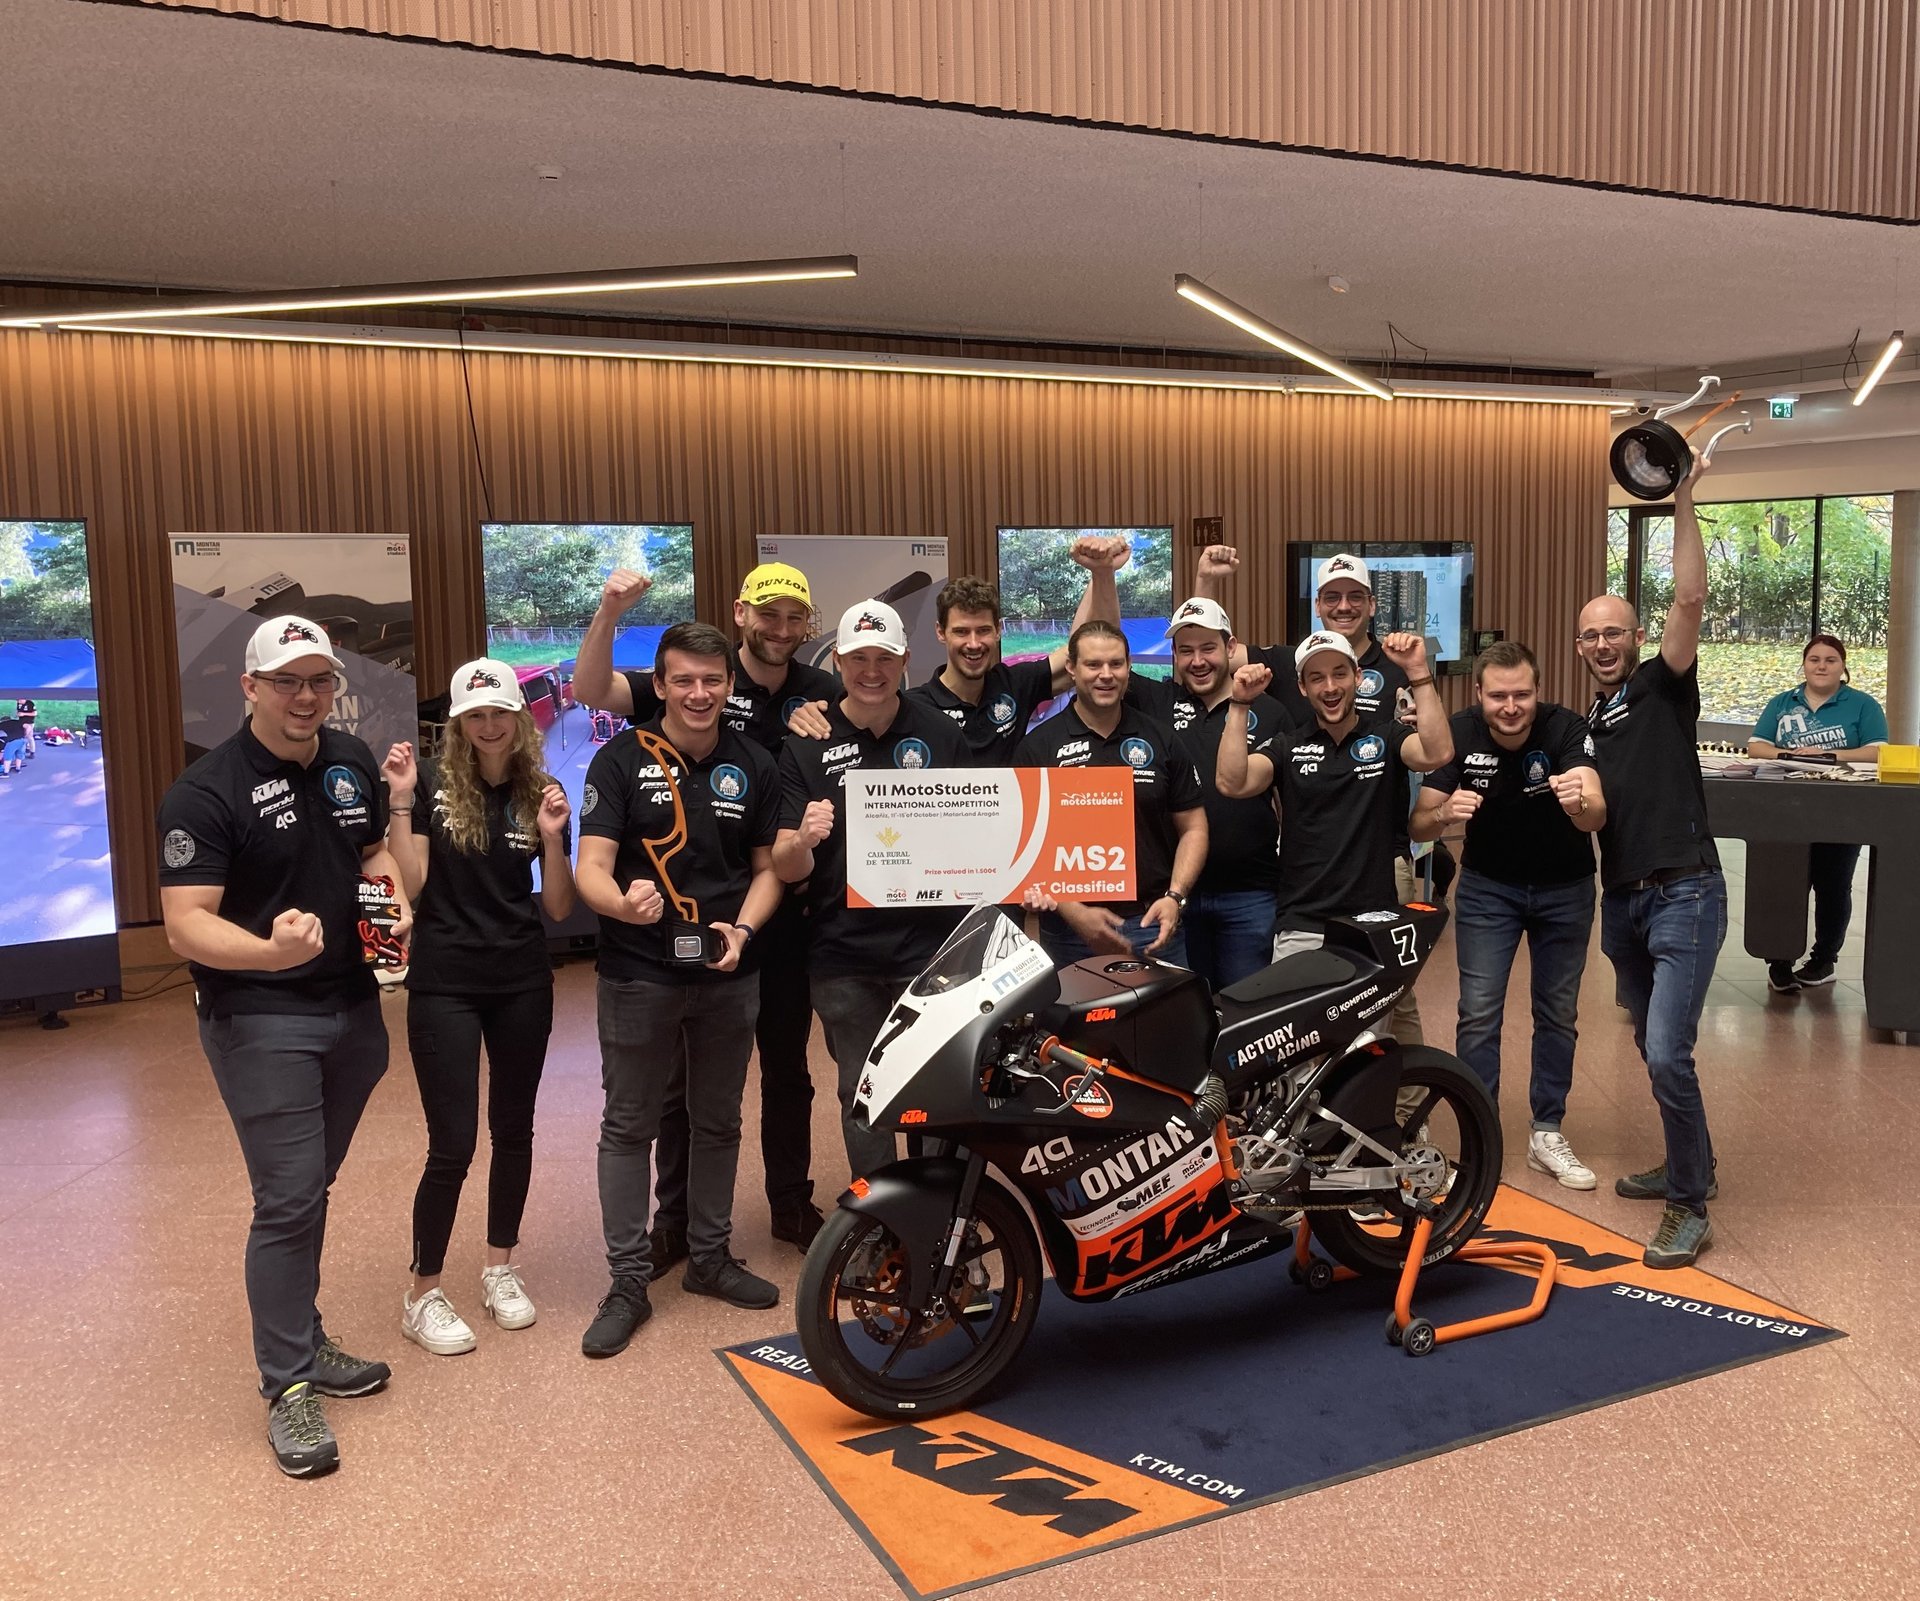 Gruppenfoto vom Racing-Team mit dem Rennmotorrad im Foyer des Studierendenzentrums an der Montanuniversität Leoben.